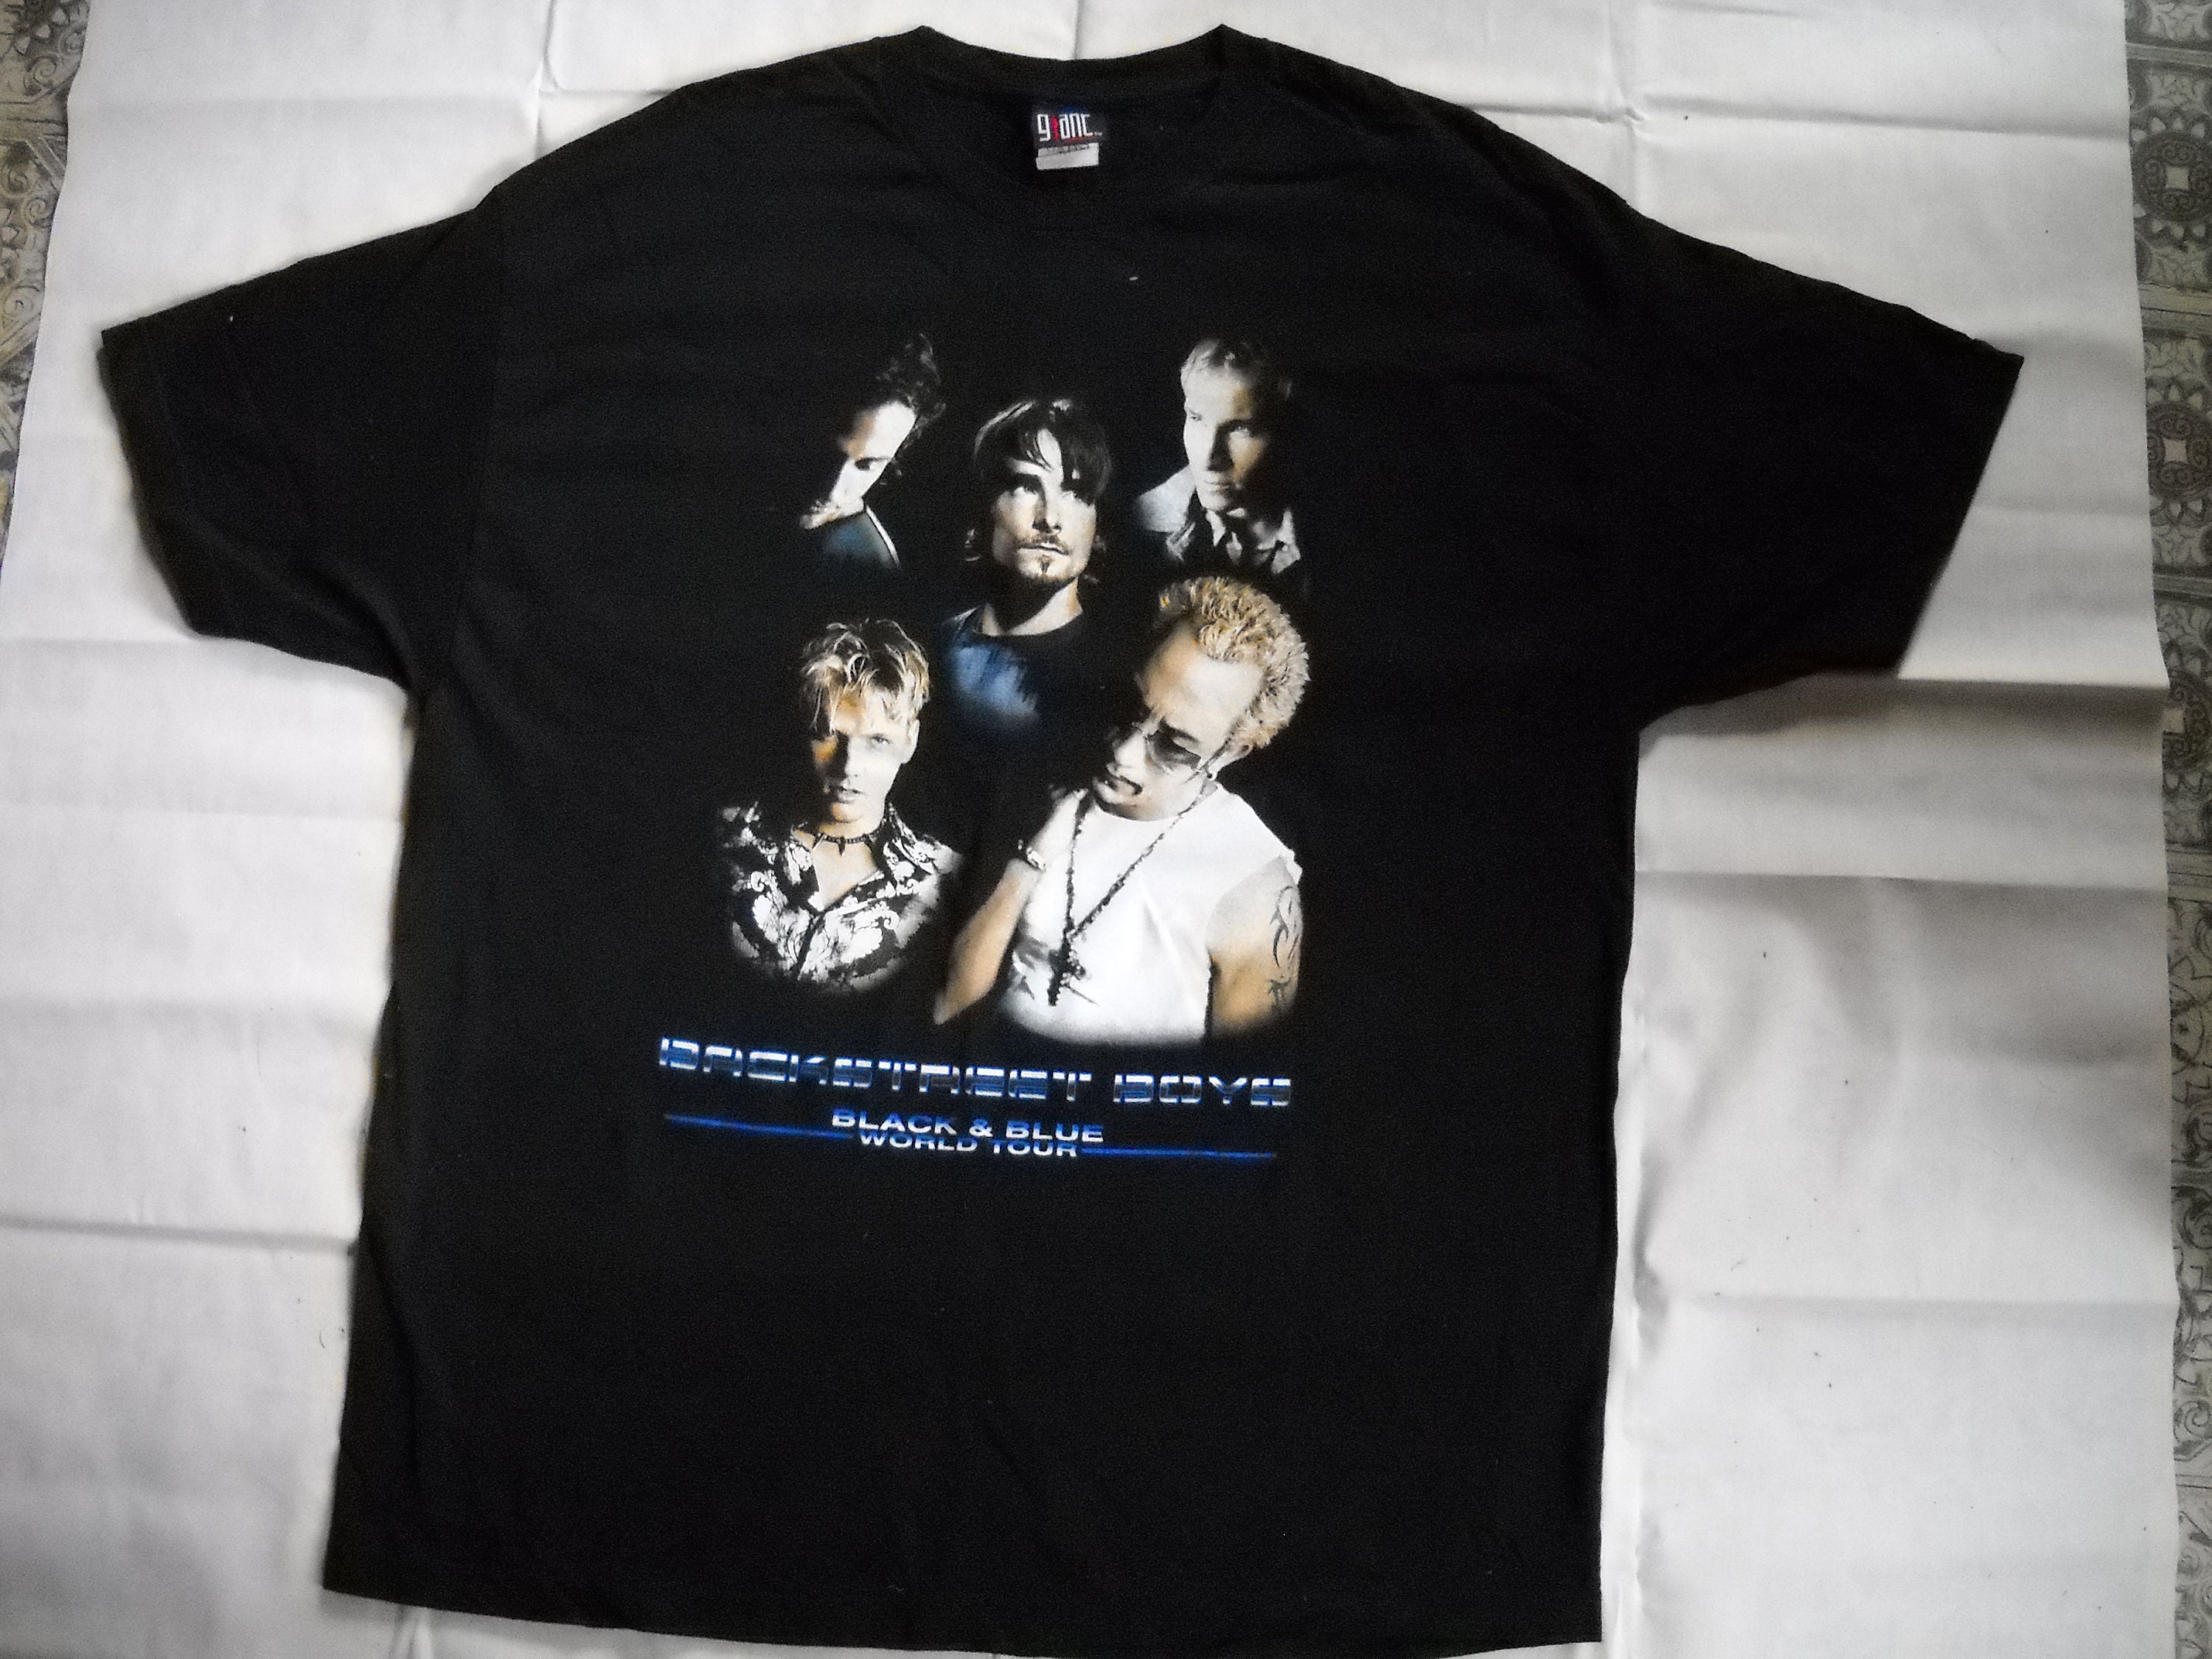 & T-shirt Tour Blue 2001 Boys Backstreet - Etsy Xx-large Black